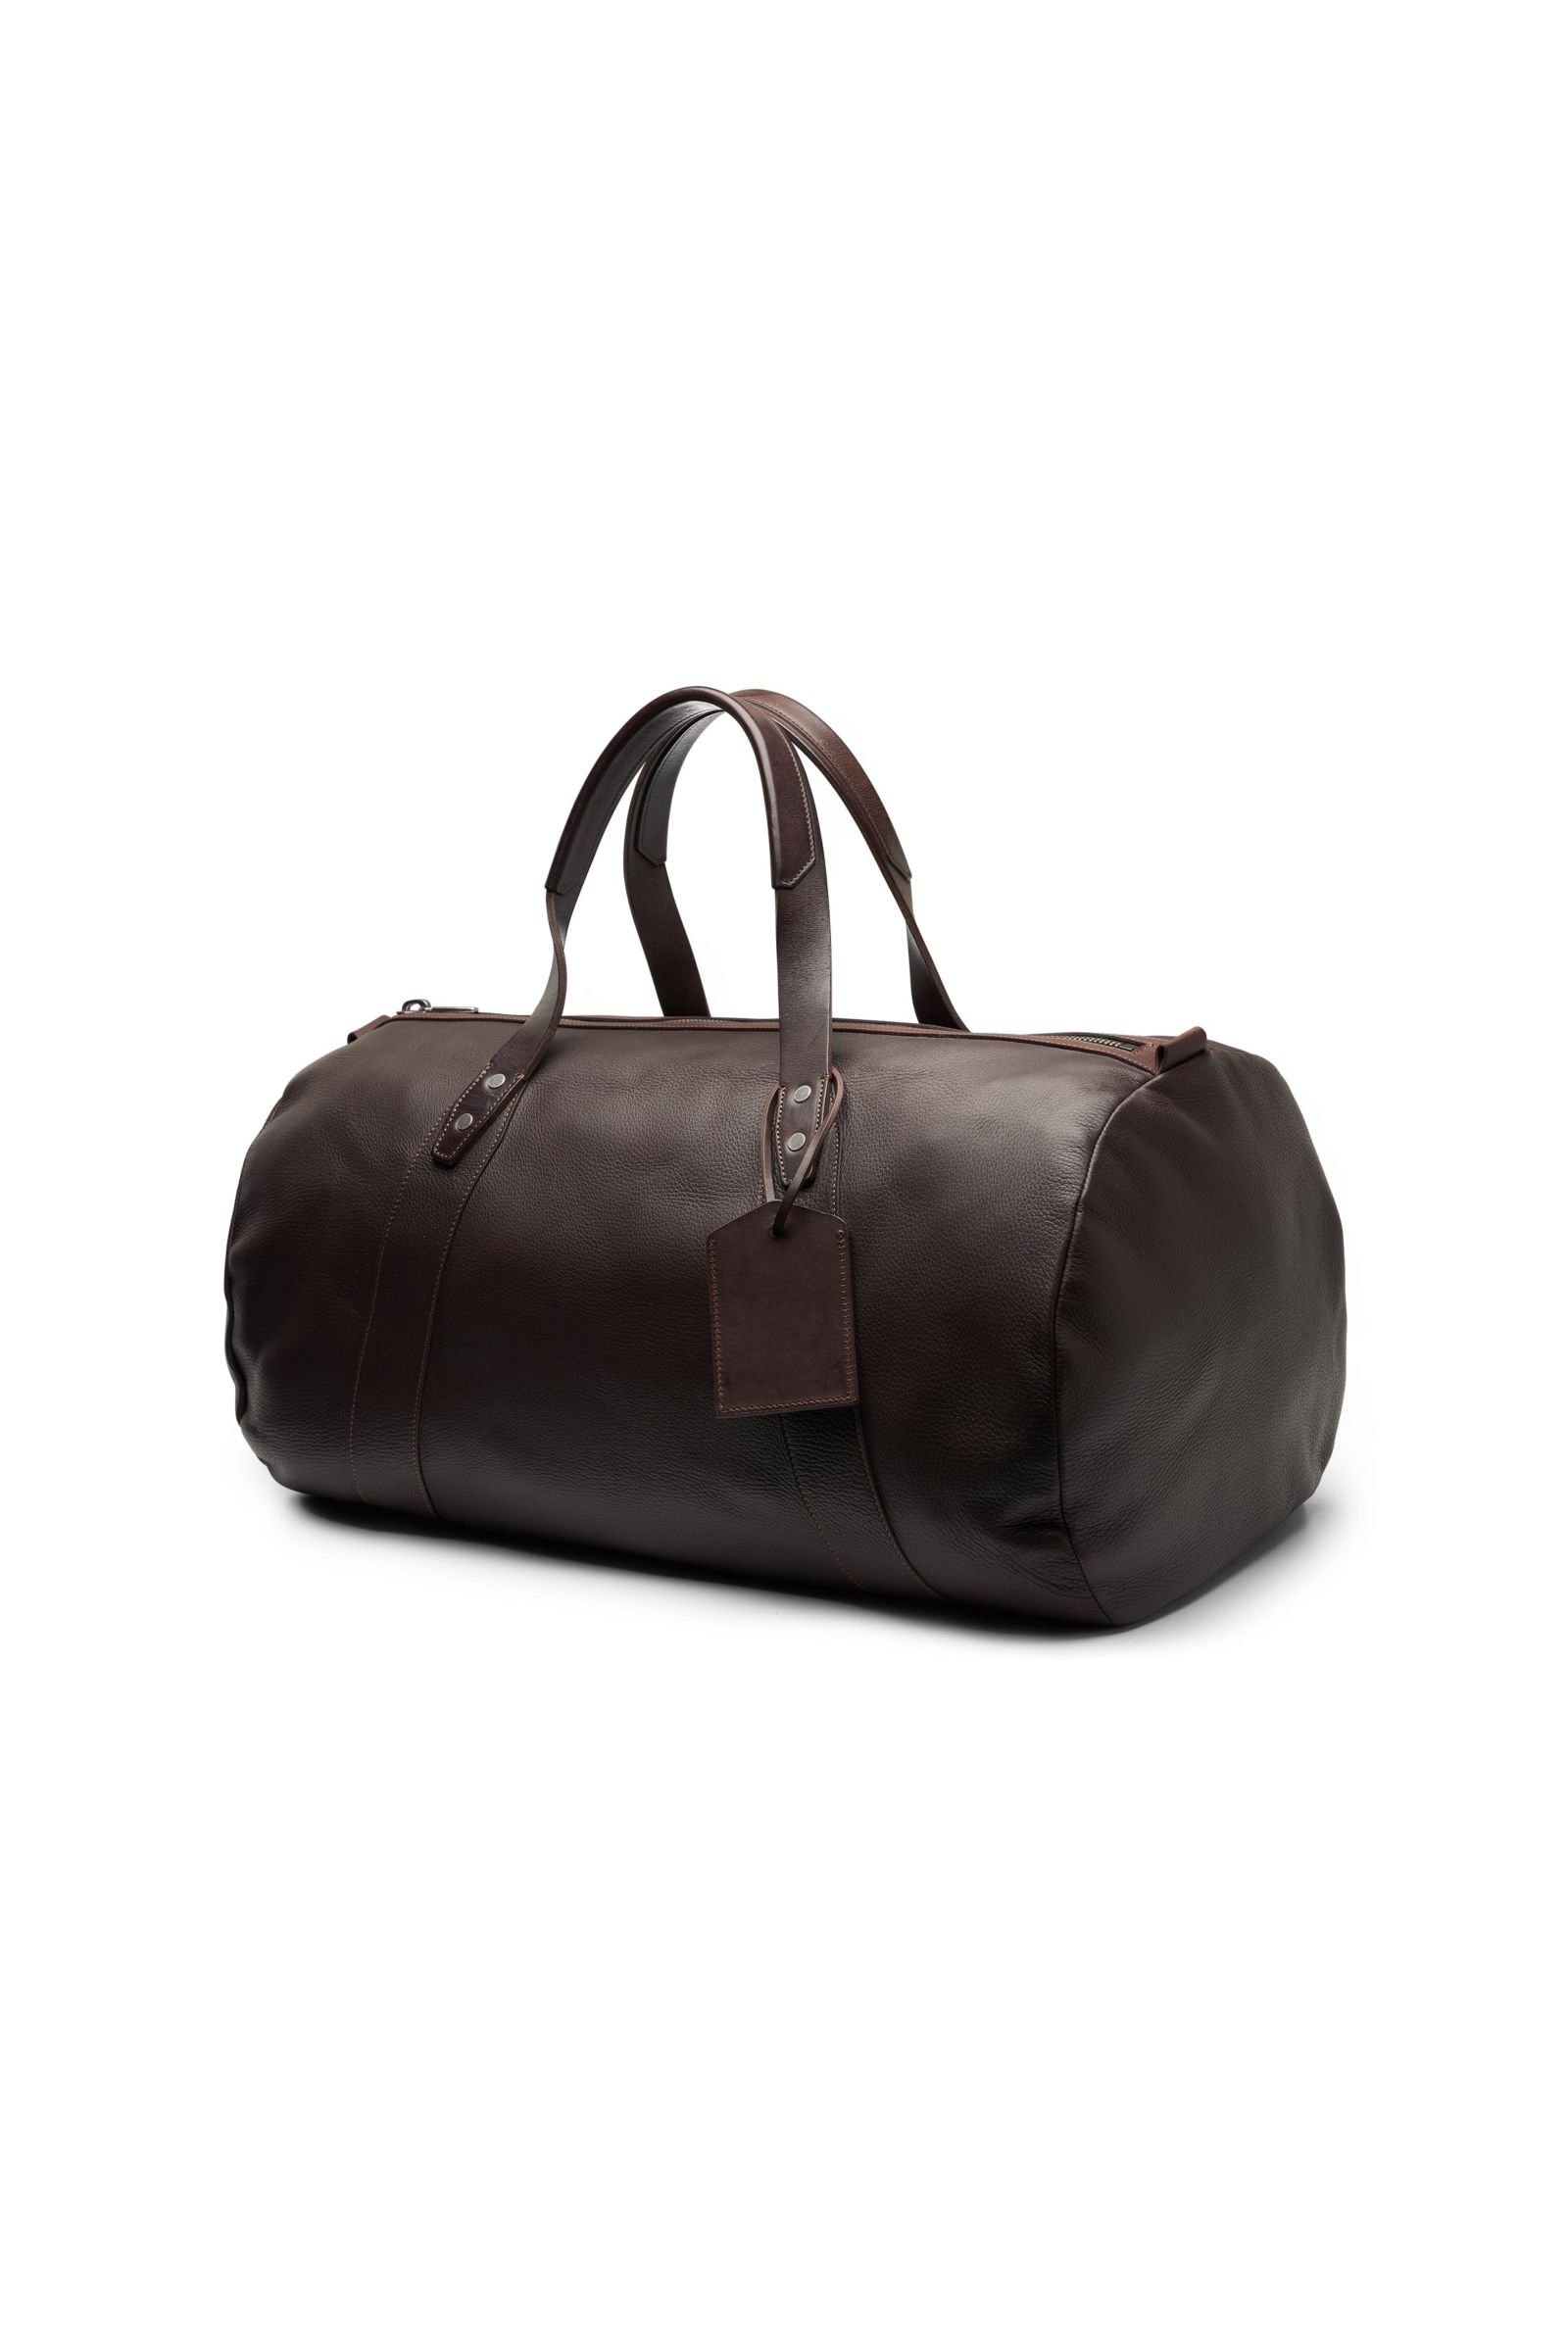 Travel bag dark brown